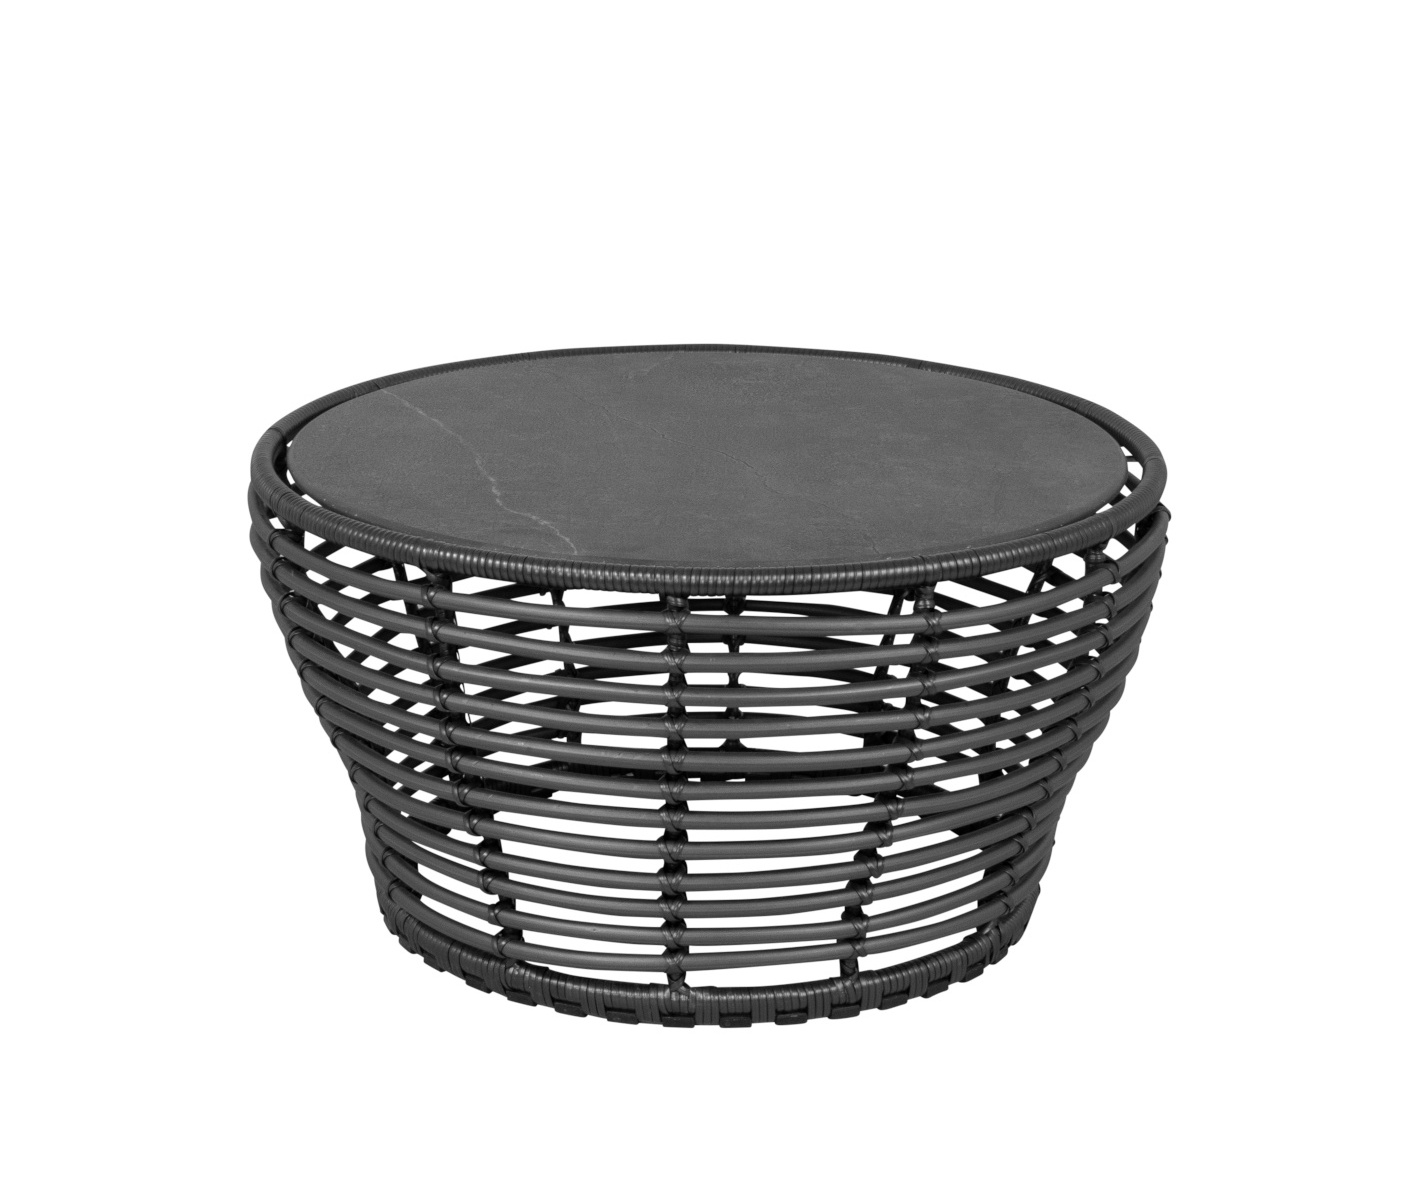 Basket Couchtisch, medium, graphit / schwarz